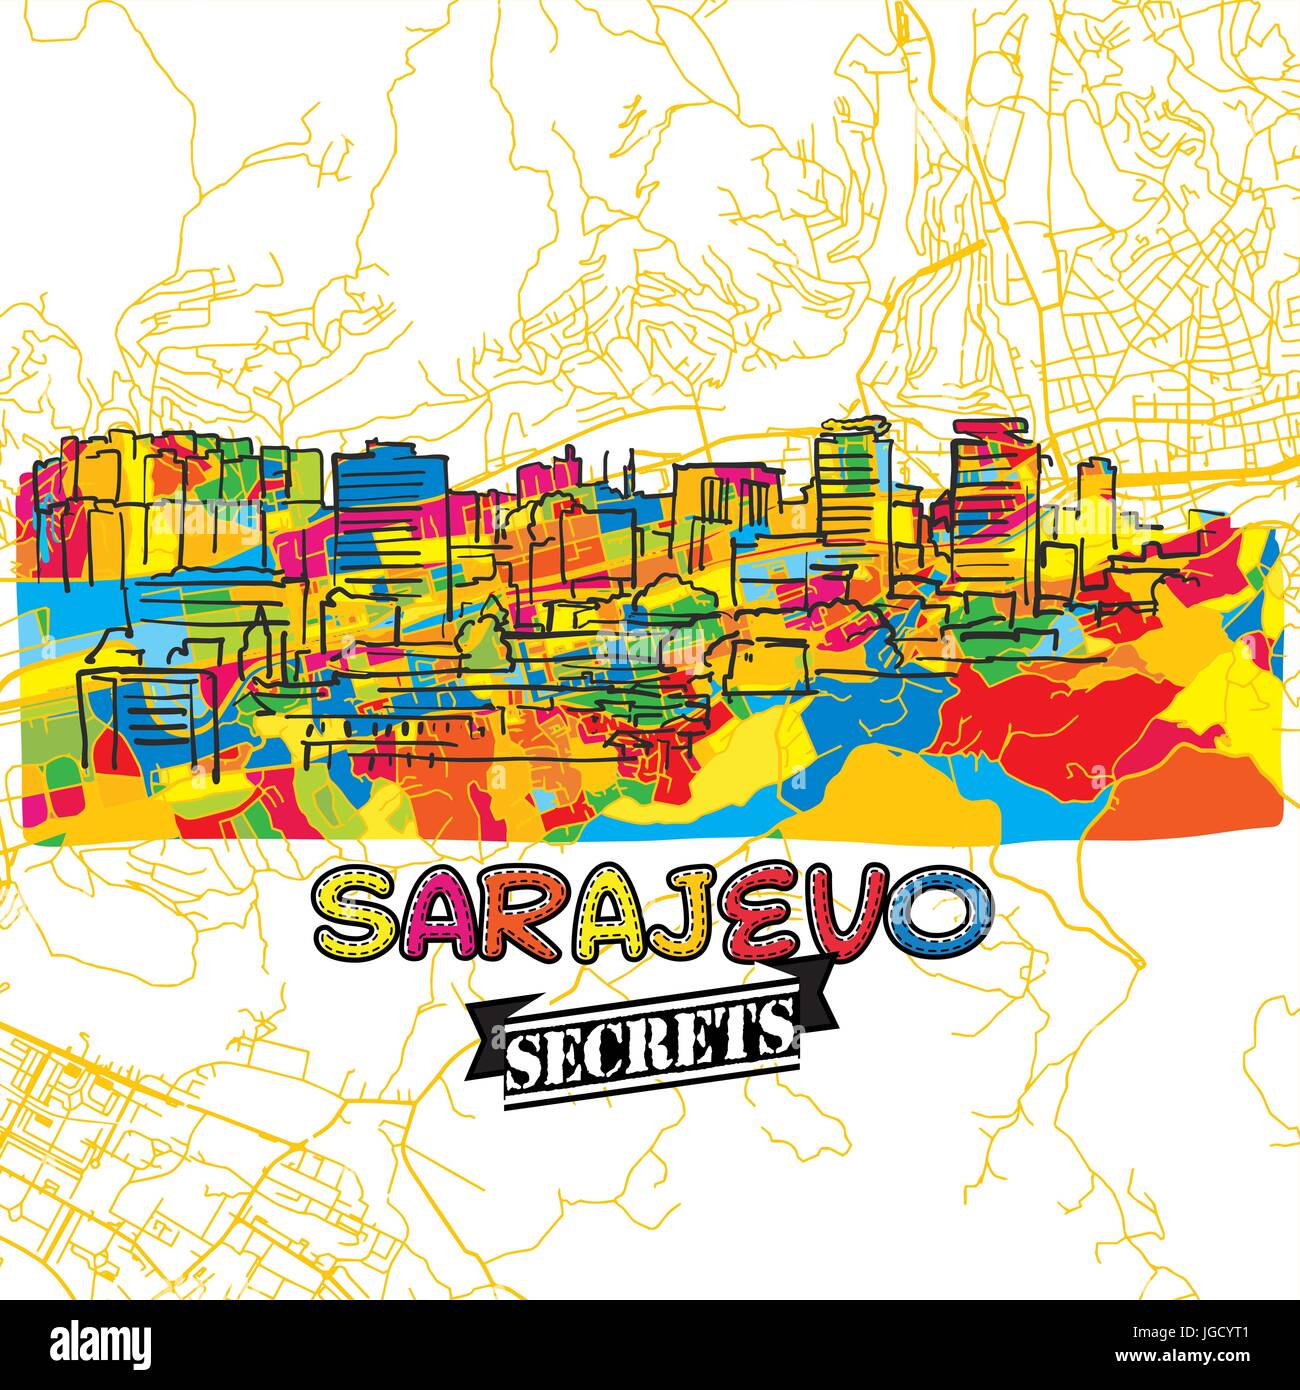 Sarajevo reisen Geheimnisse Art Map für die Zuordnung von Experten und Reiseführer. Handgemachte Stadt Logo, Typo-Abzeichen und Hand gezeichnete Vektor-Bild an der Spitze sind gruppiert eine Stock Vektor